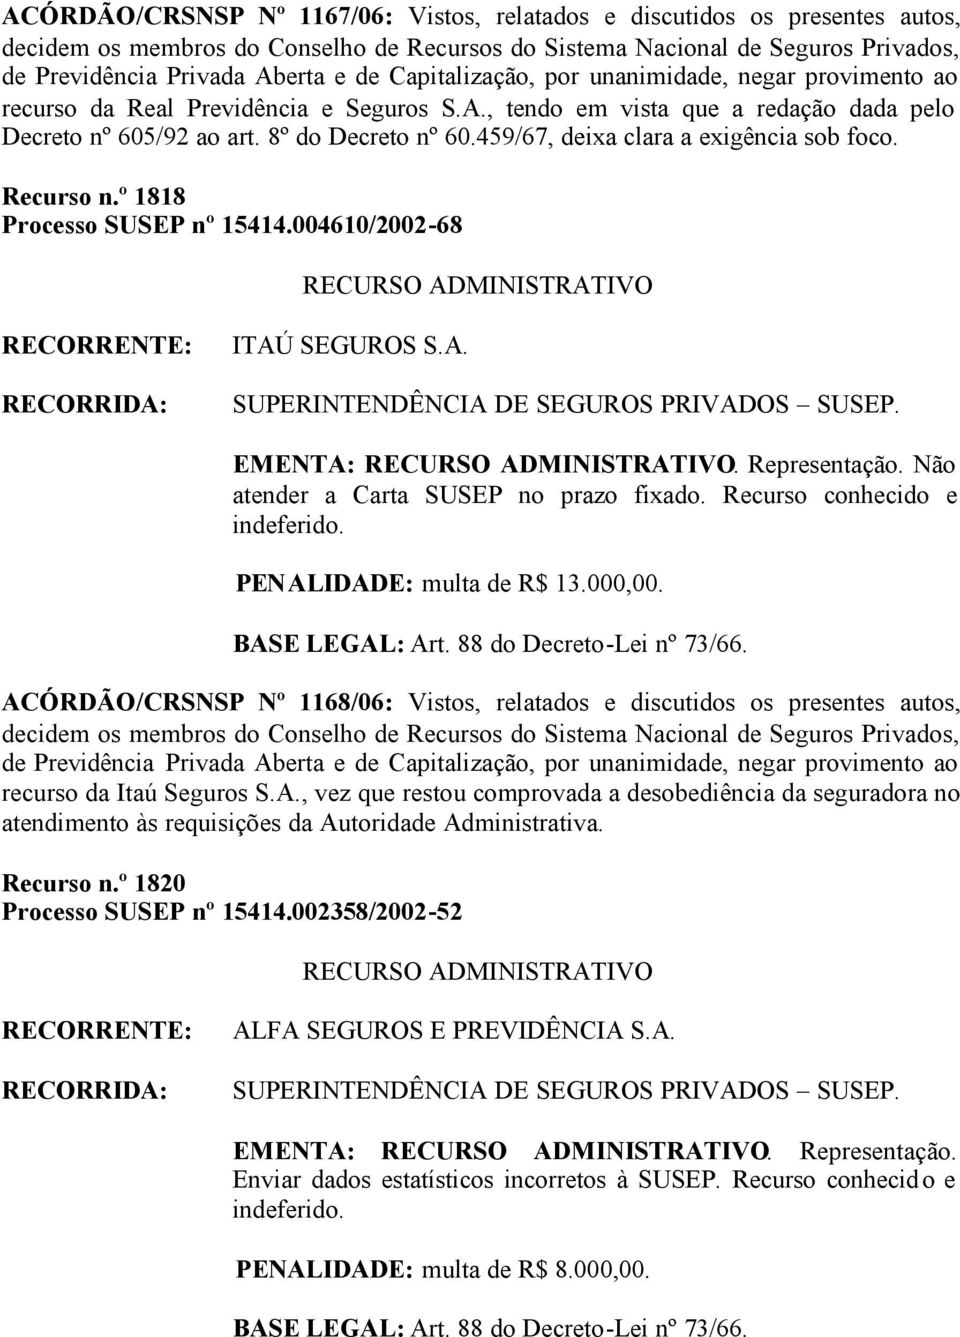 004610/2002-68 ITAÚ SEGUROS S.A. EMENTA:. Representação. Não atender a Carta SUSEP no prazo fixado. Recurso conhecido e indeferido. PENALIDADE: multa de R$ 13.000,00.